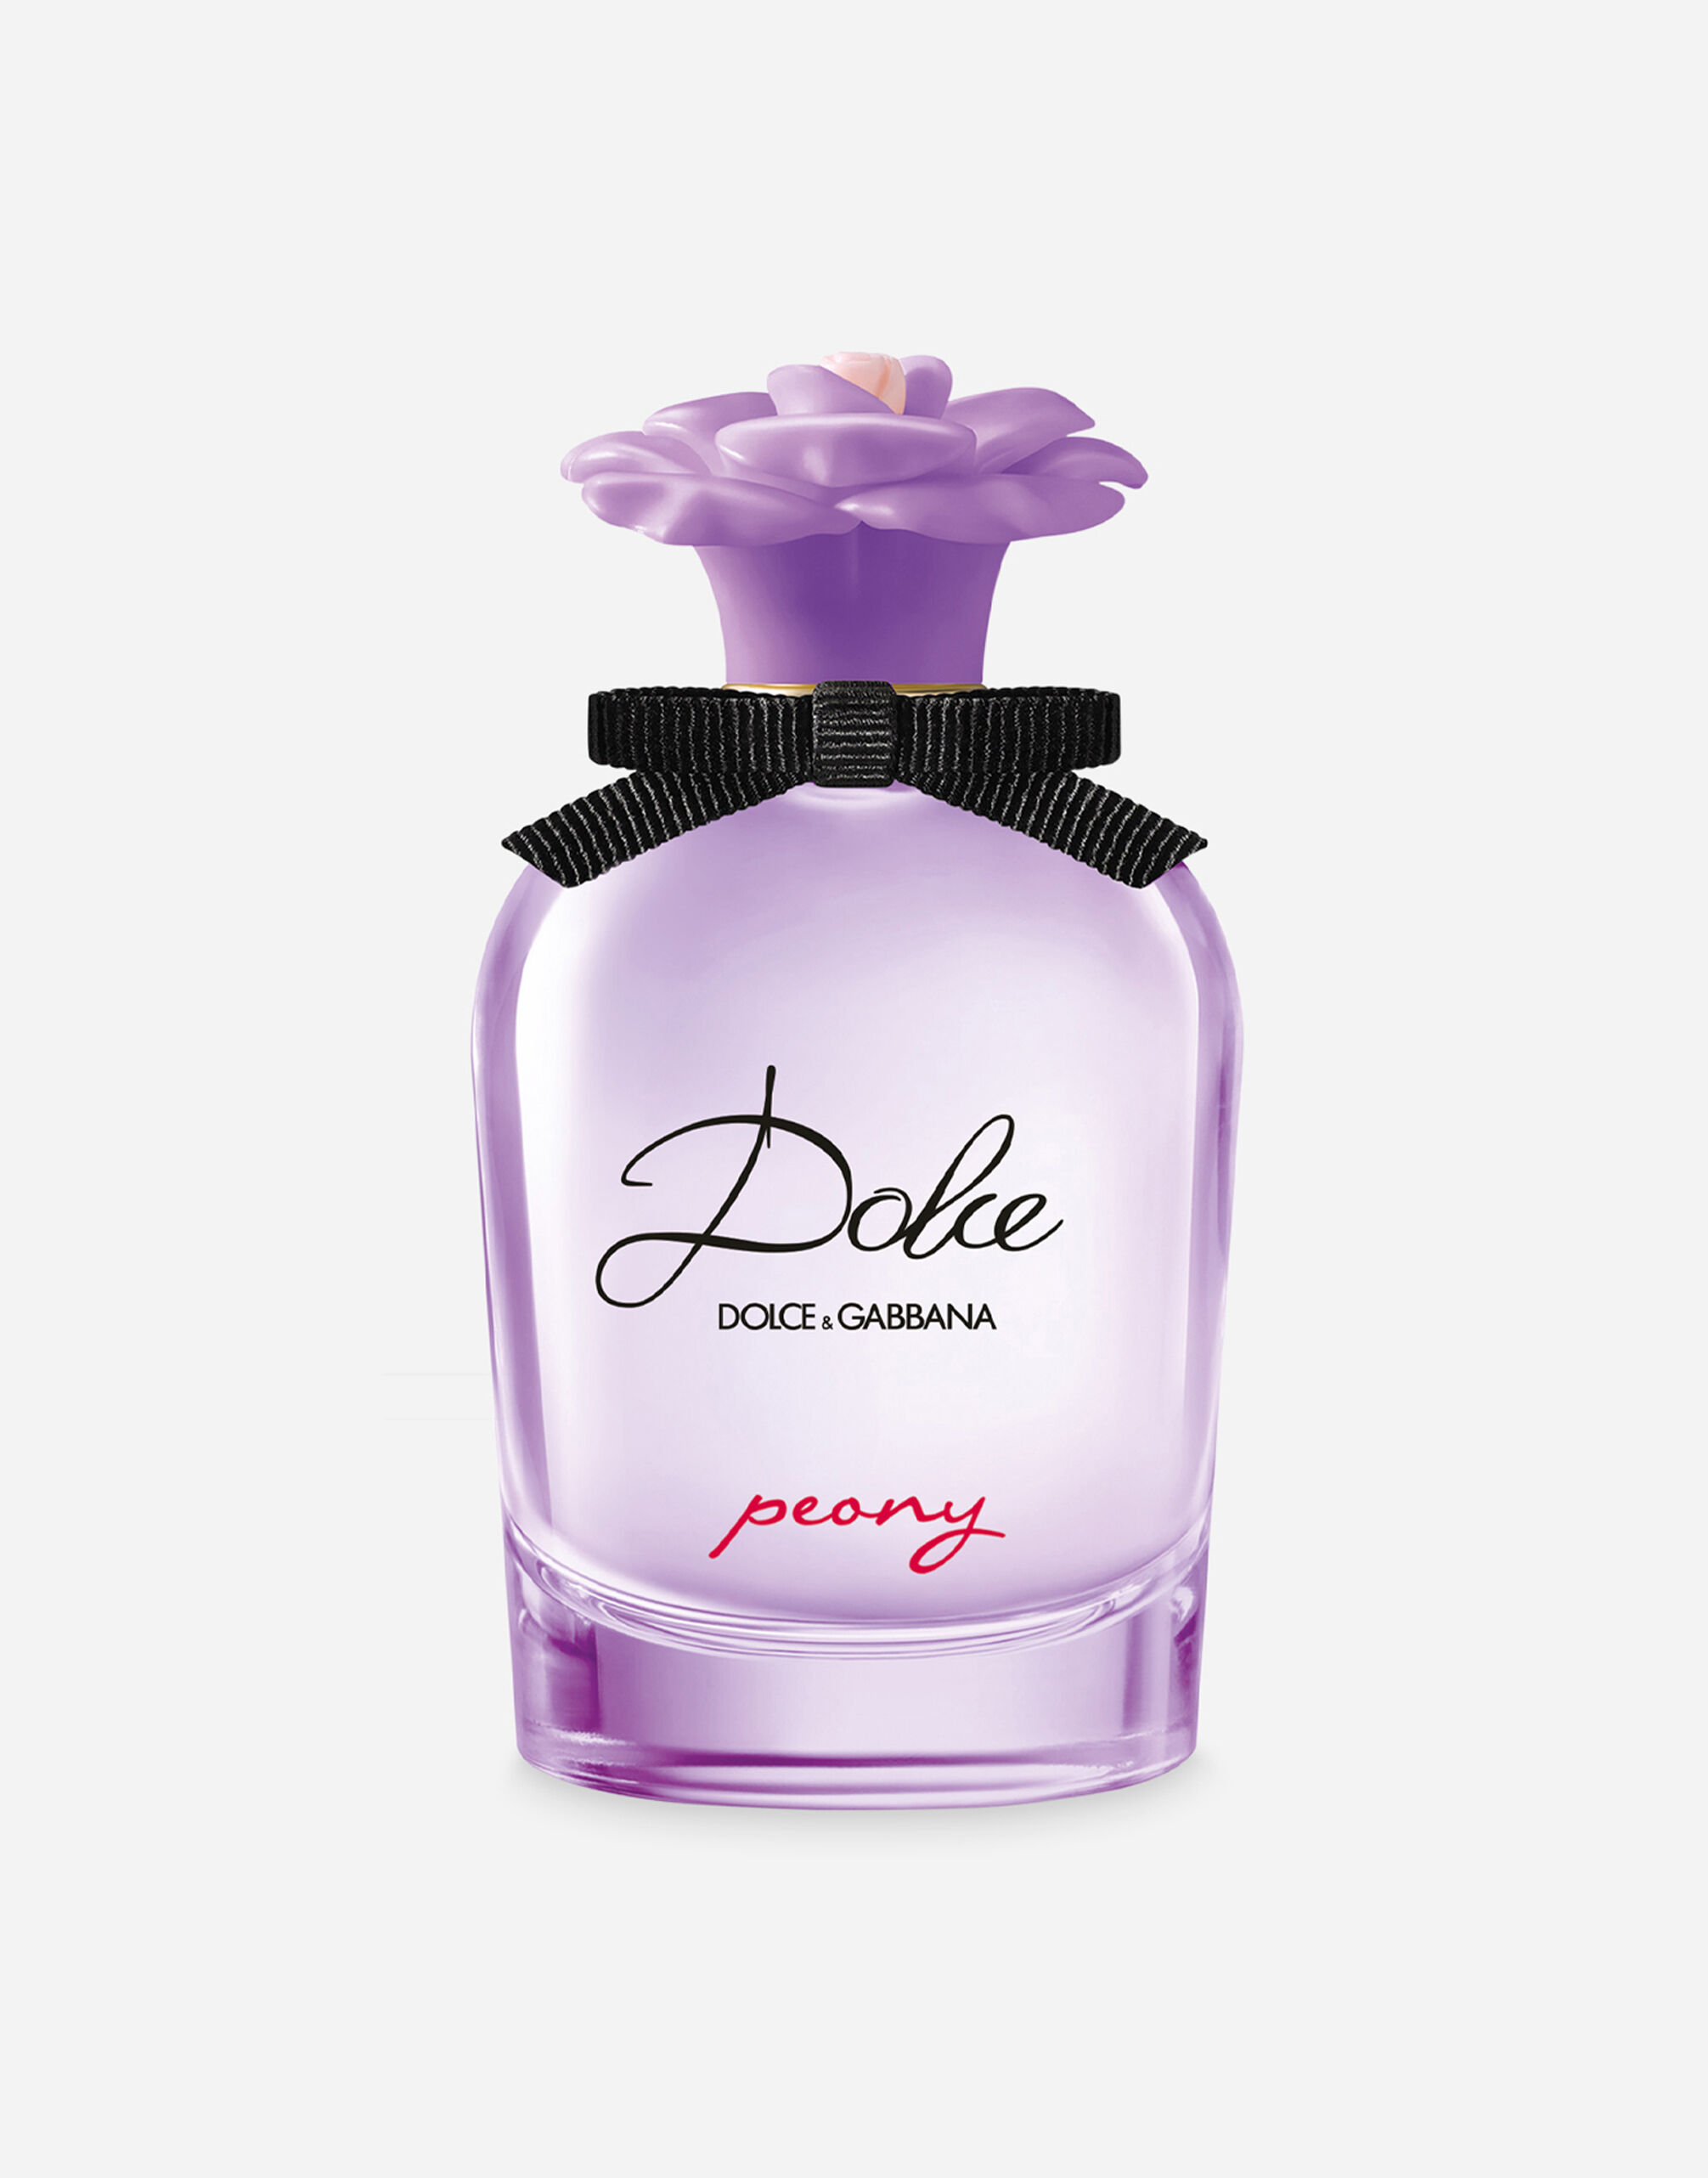 Dolce & Gabbana Dolce Peony Eau de Parfum - VP003BVP000